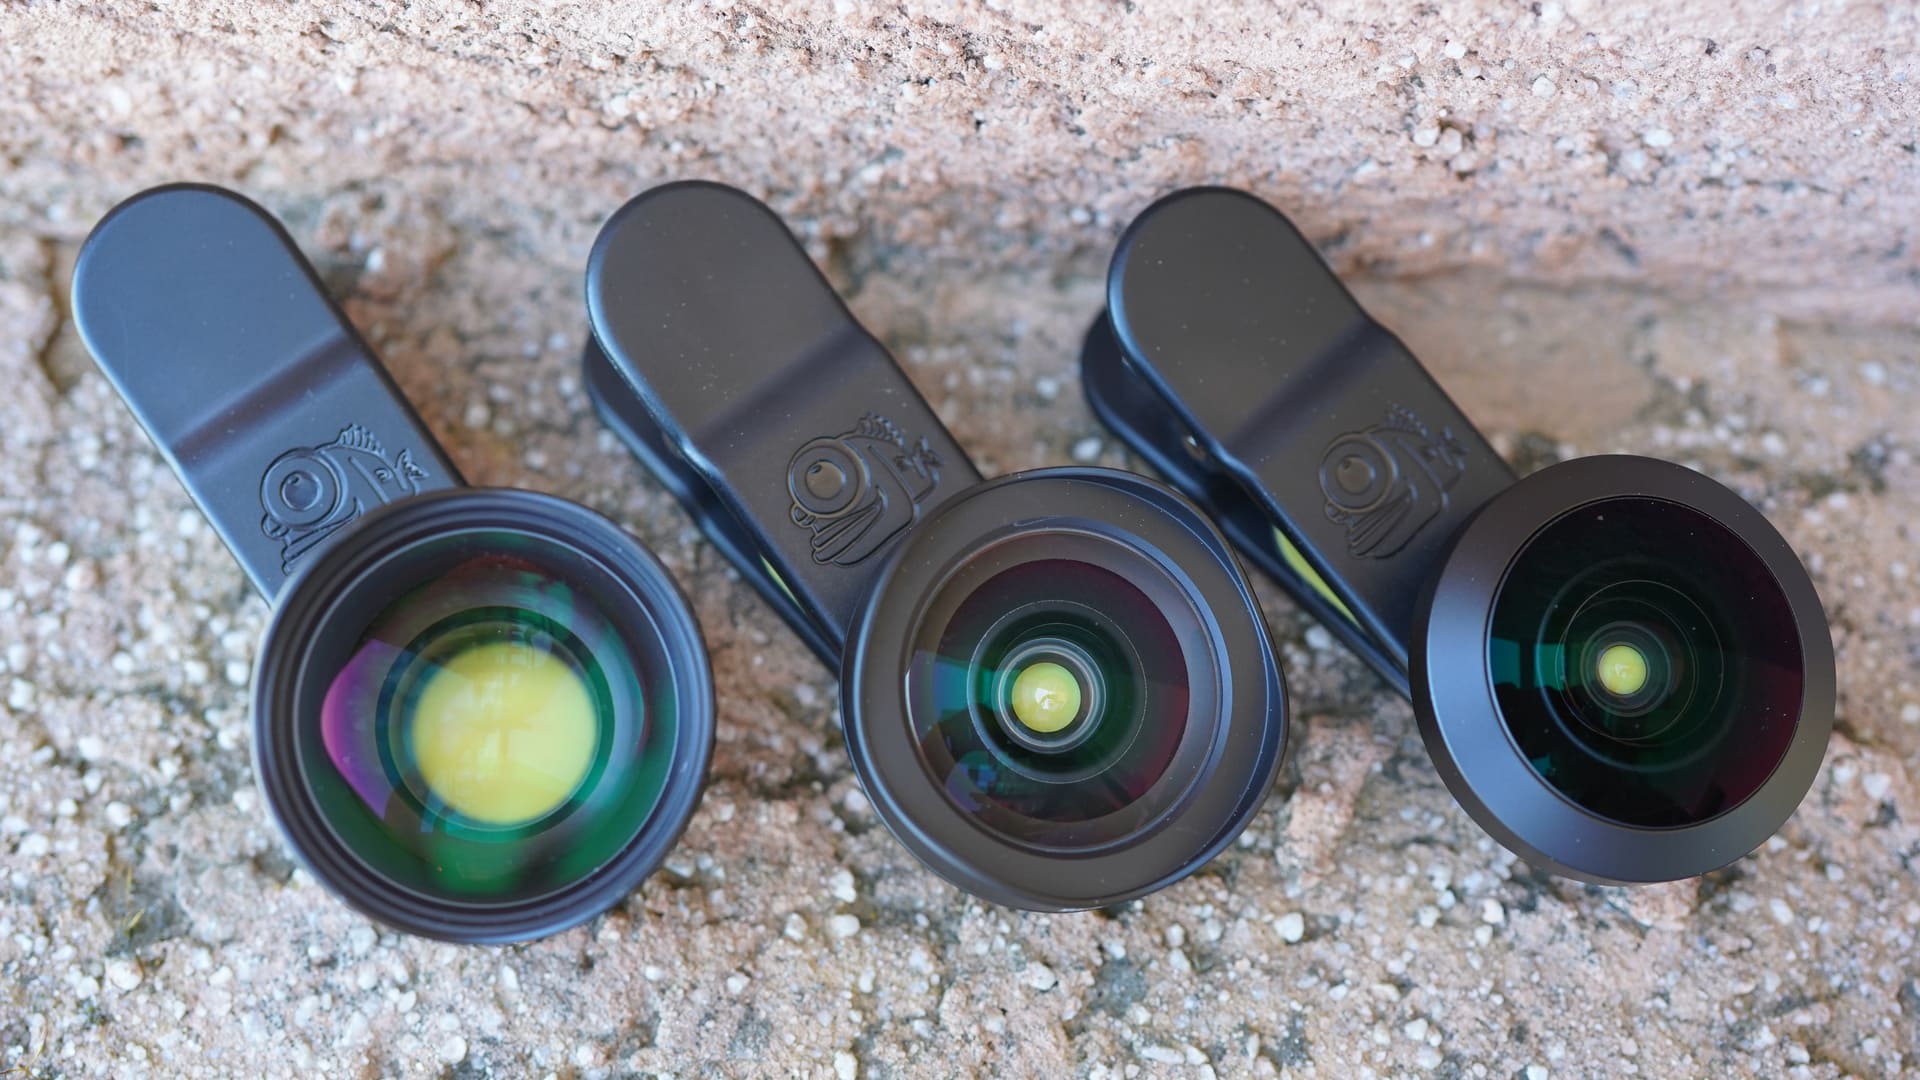 Black Eye Pro Kit G4 review three lenses